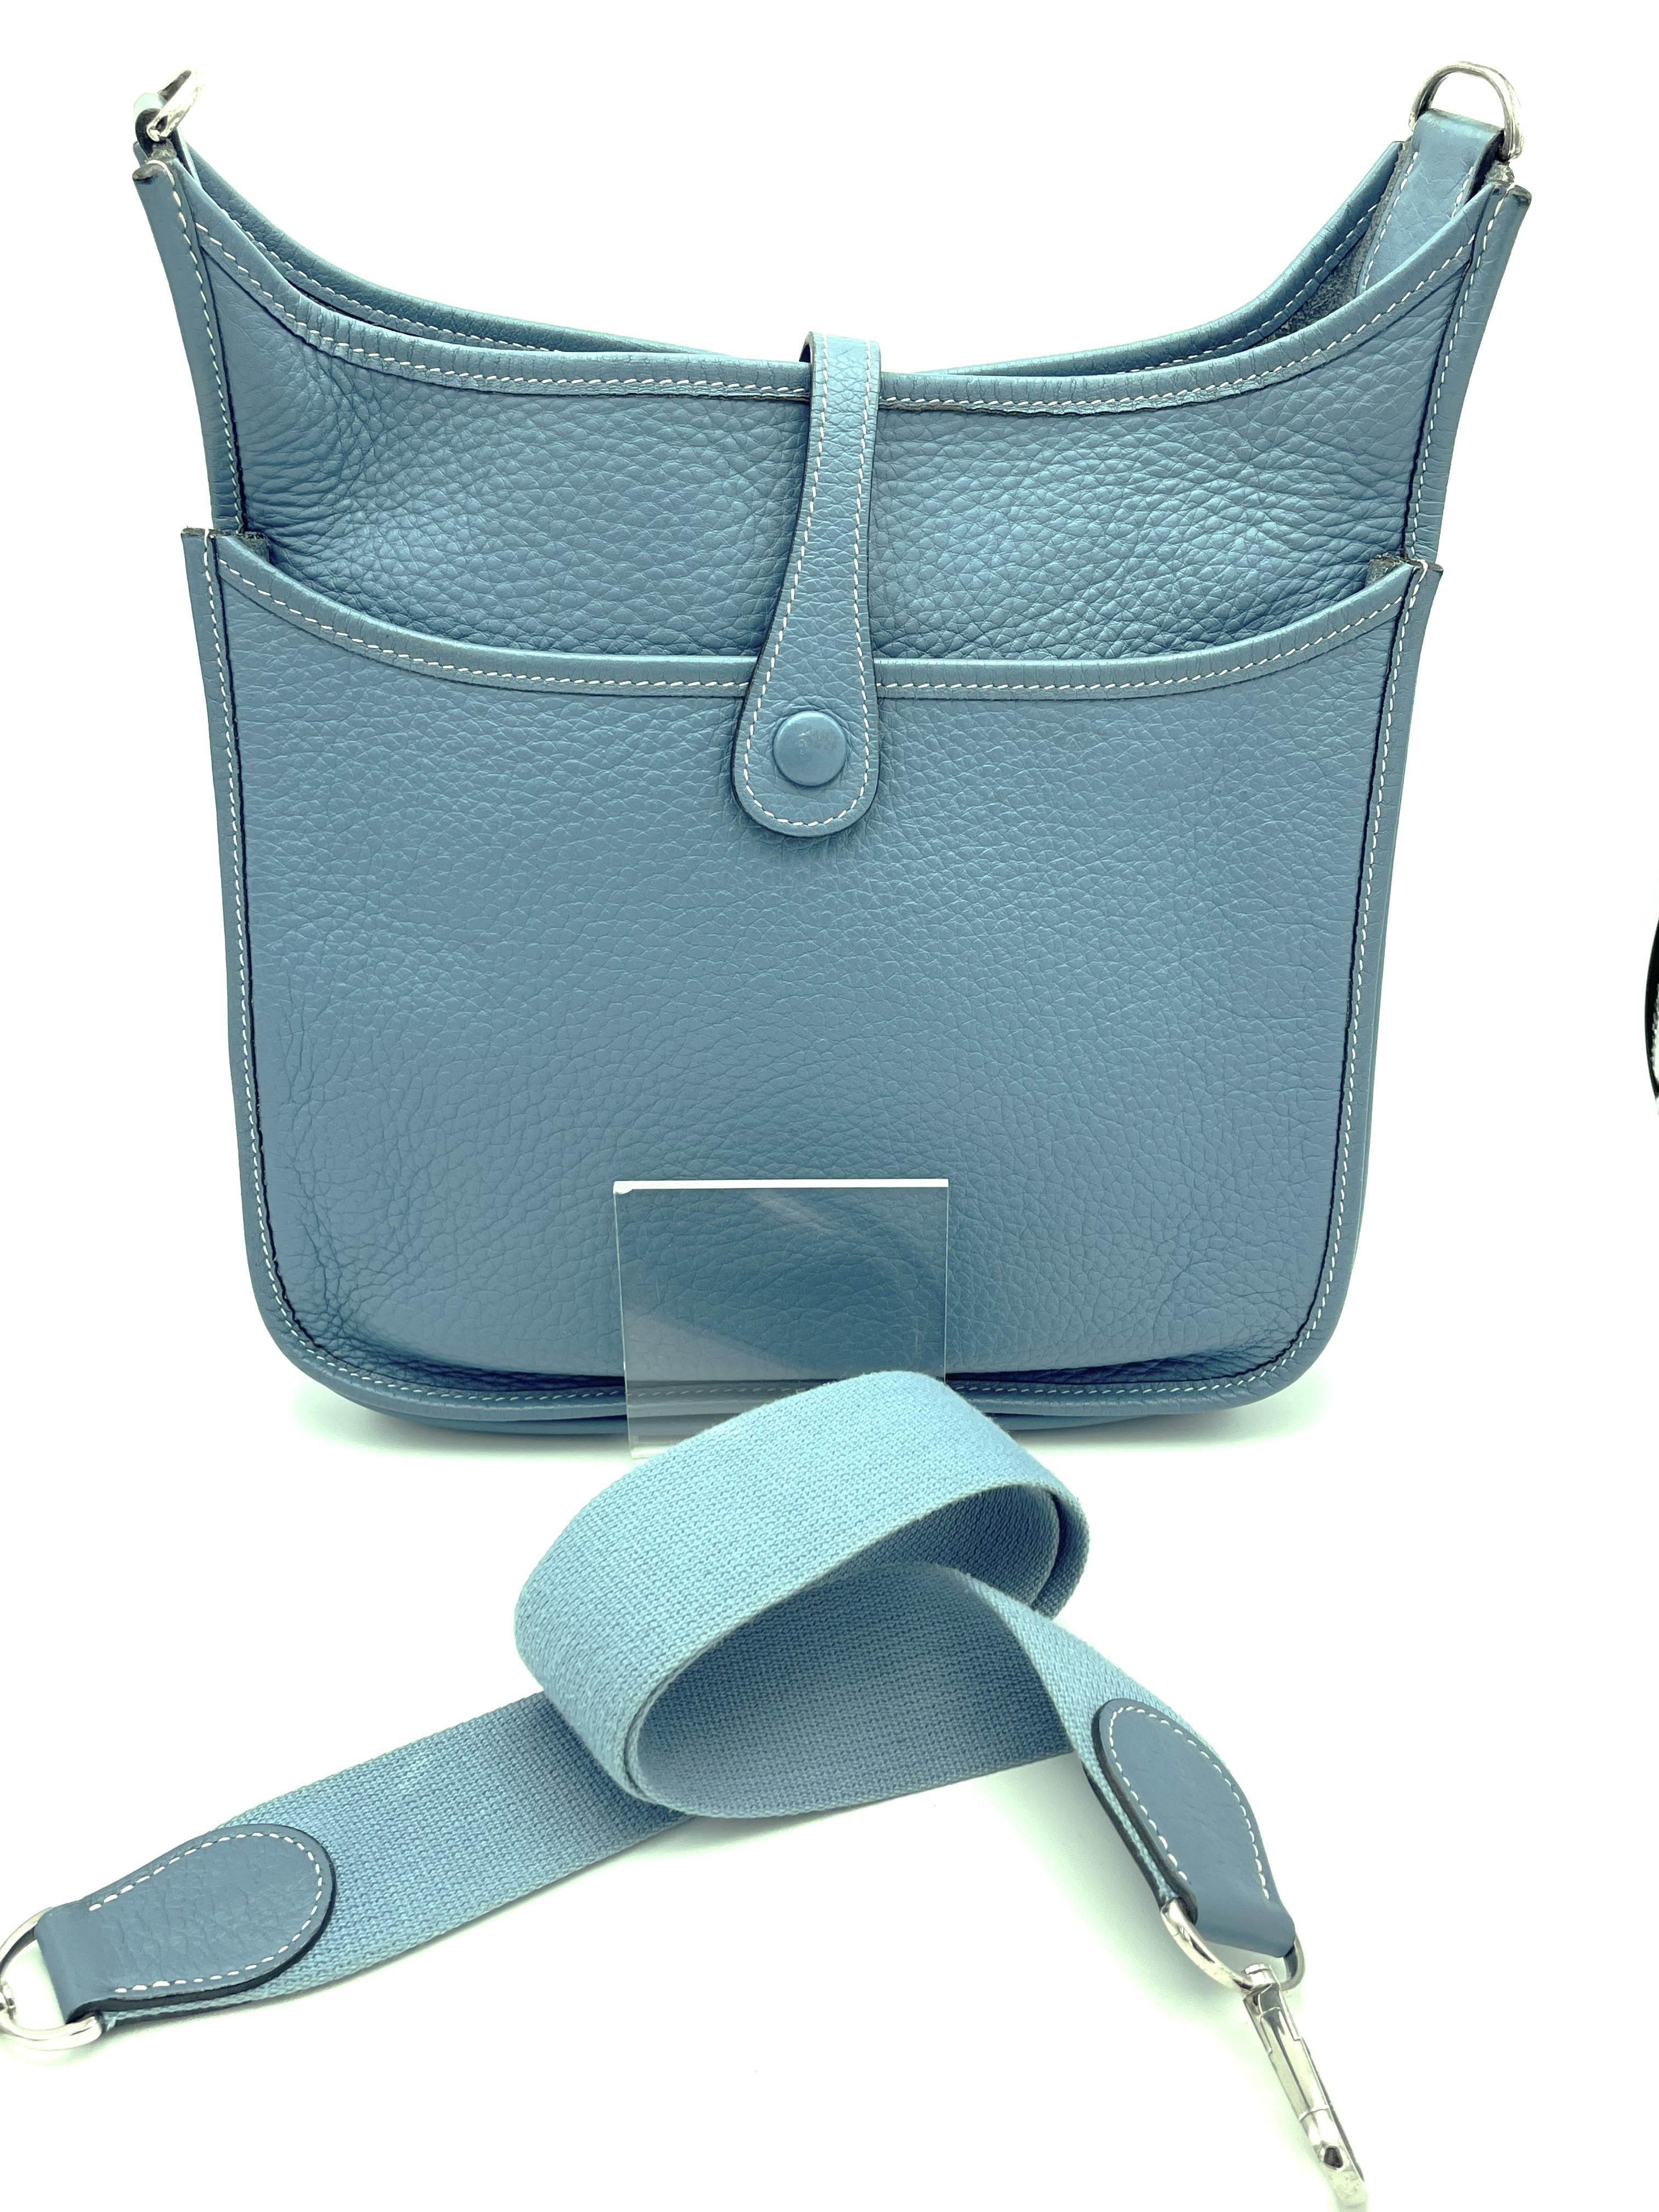 Hermès Silver Evelyne GM Shoulder Bag, Messenger Bag, Clemens Leather blue jeans, 